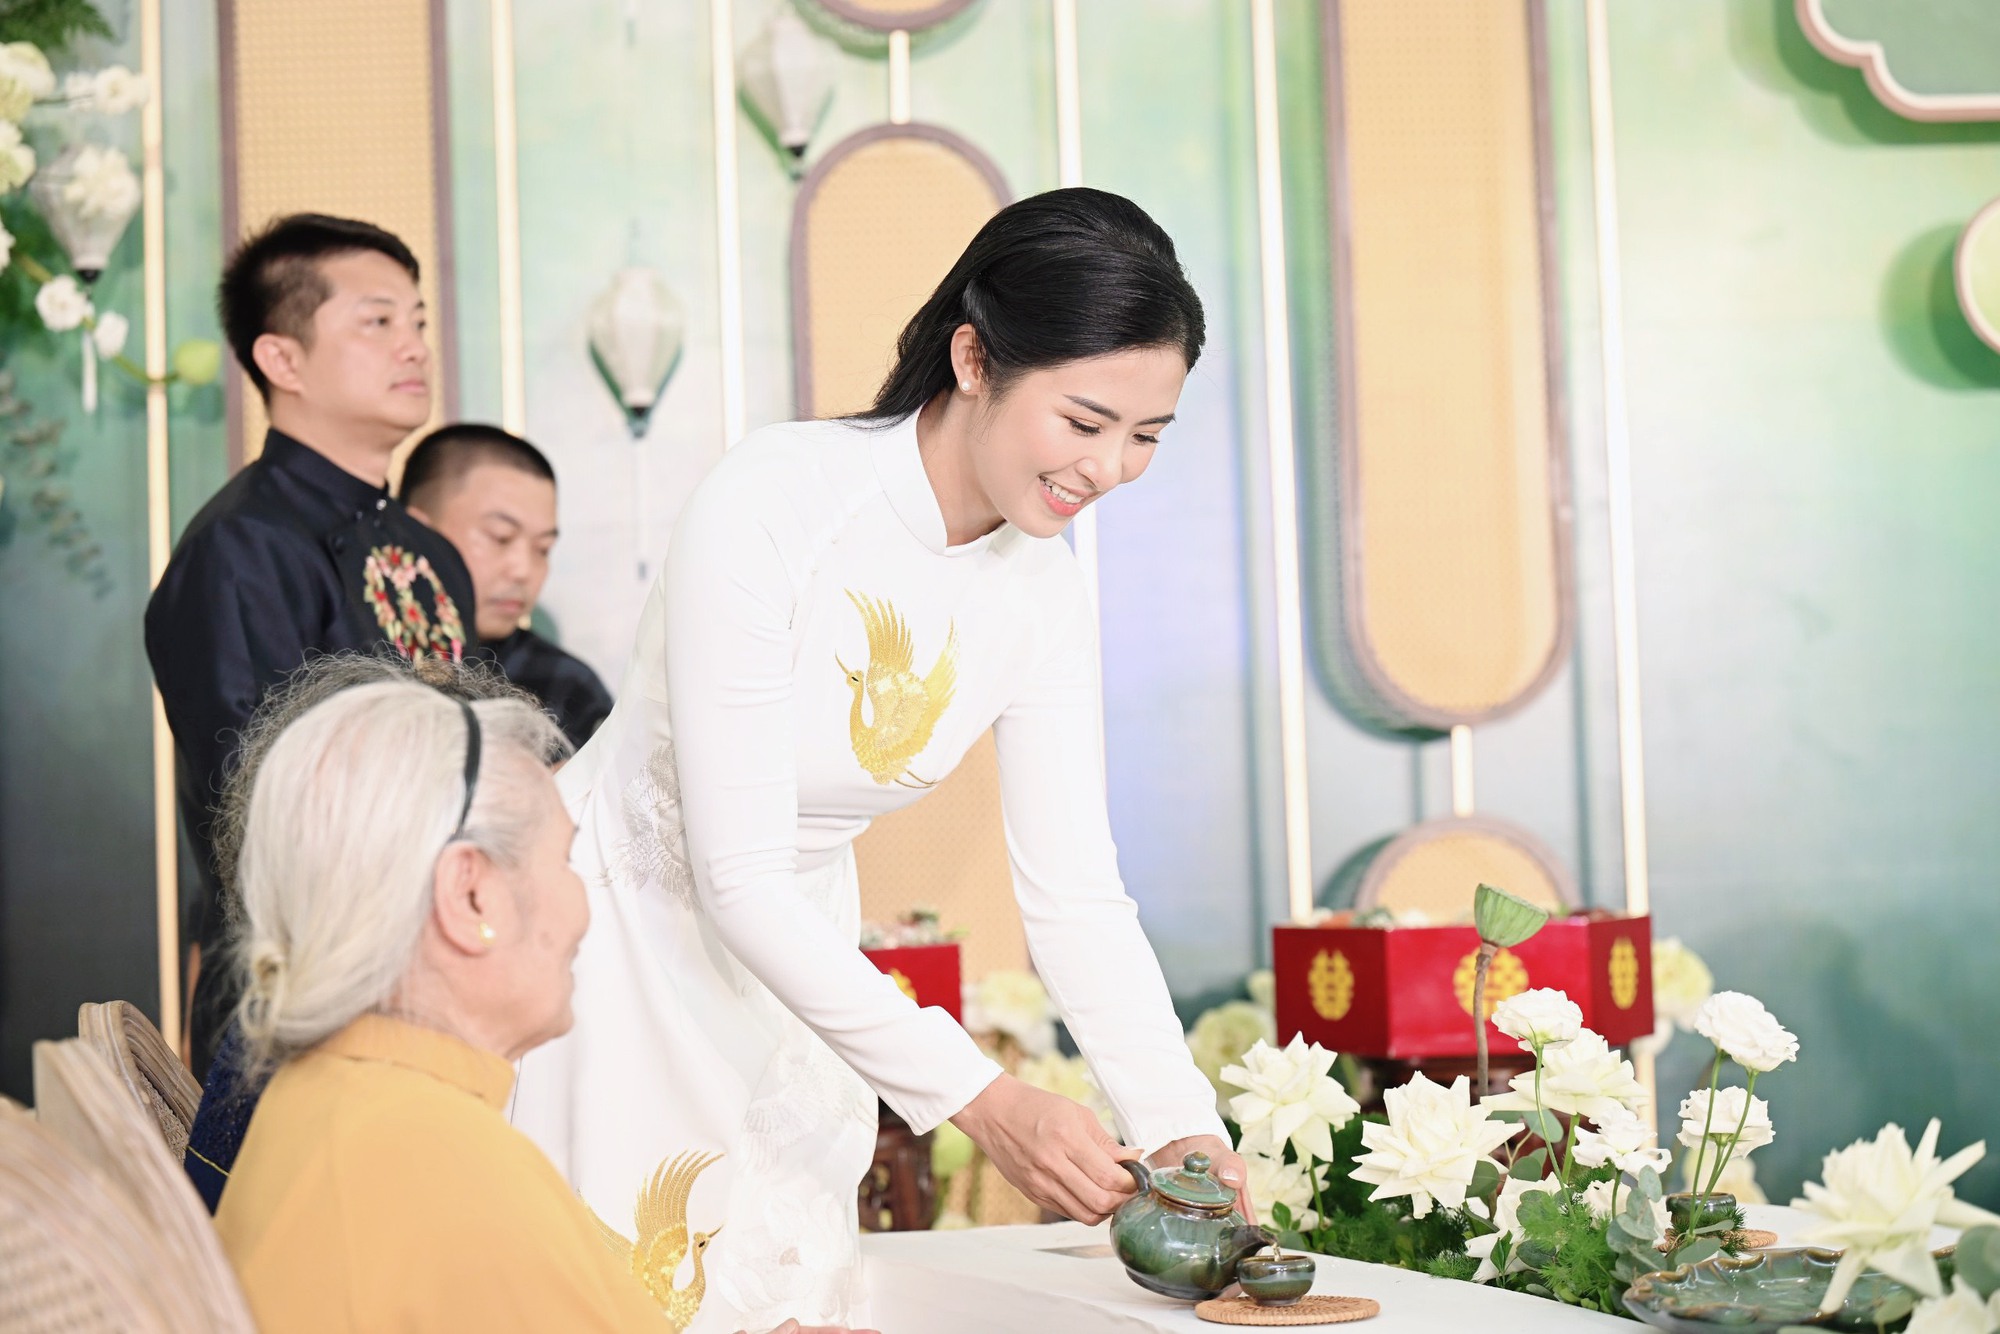 Đỗ Mỹ Linh, Dương Tú Anh cùng dàn Hoa - Á hậu rạng rỡ xuất hiện tại Lễ ăn hỏi Hoa hậu Ngọc Hân - Ảnh 2.